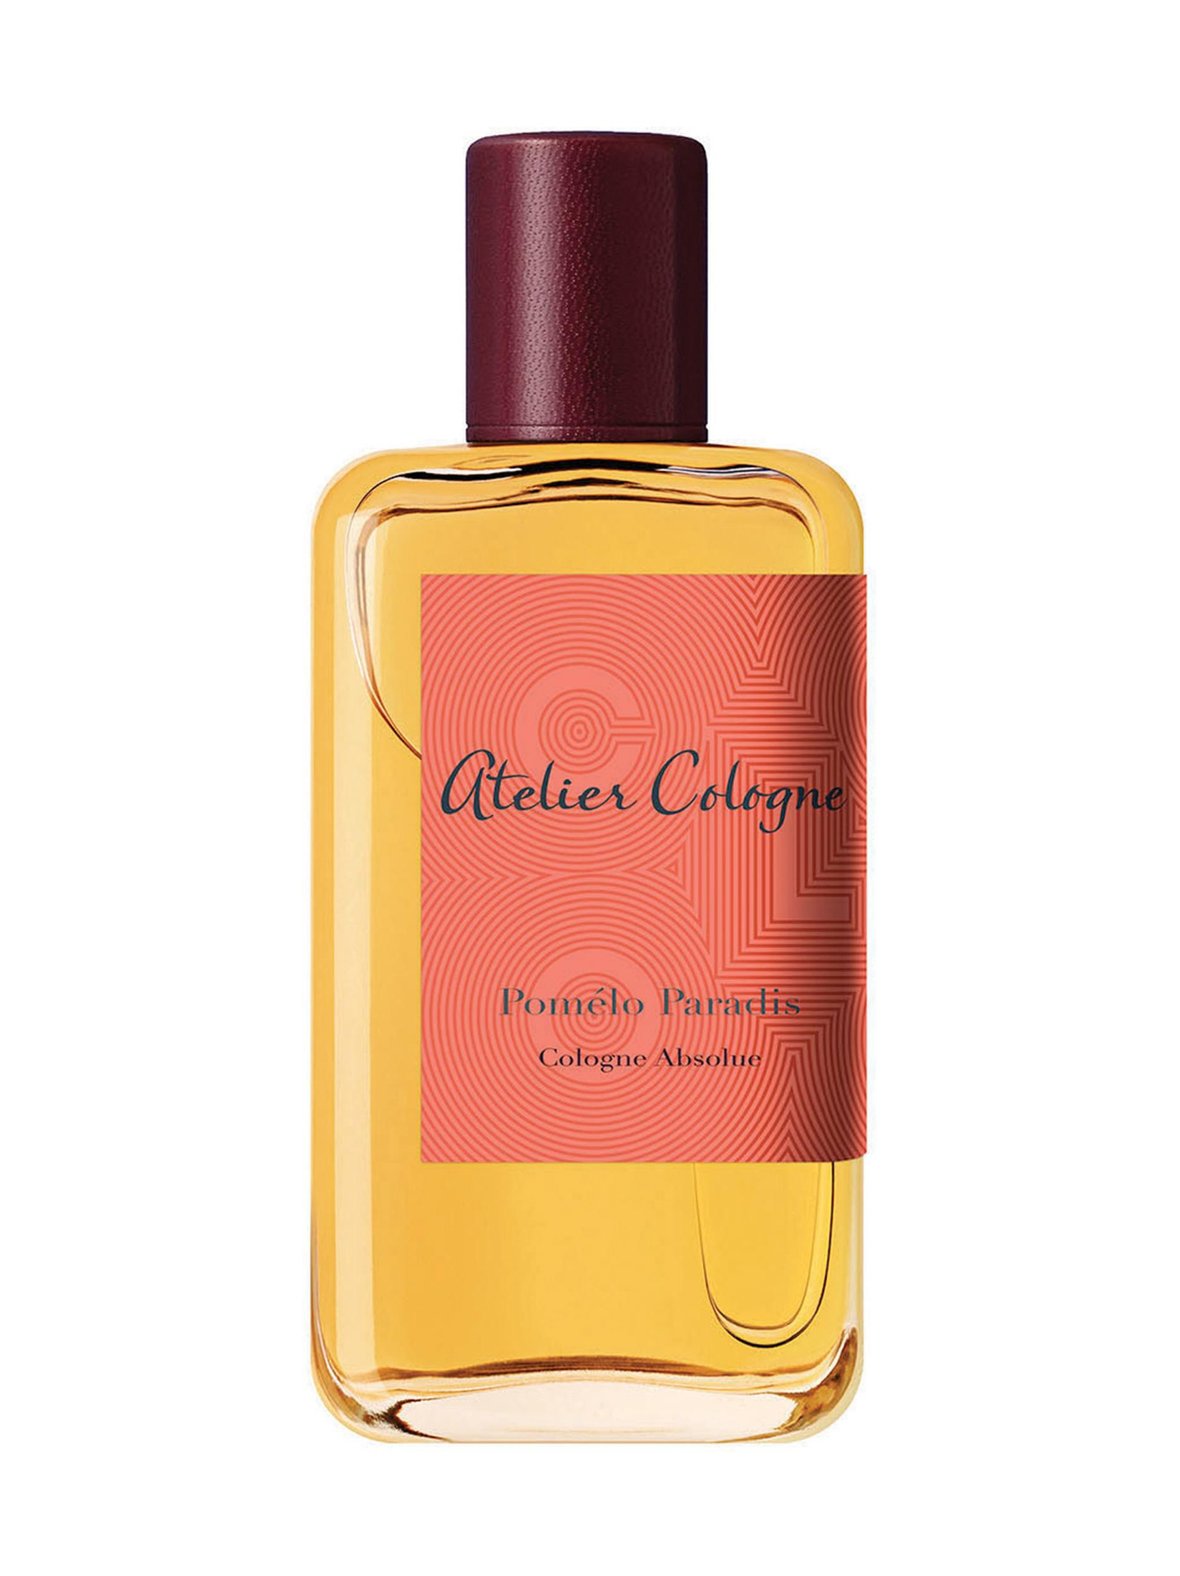 Pomélo Paradis Cologne Absolue -tuoksu, Atelier Cologne